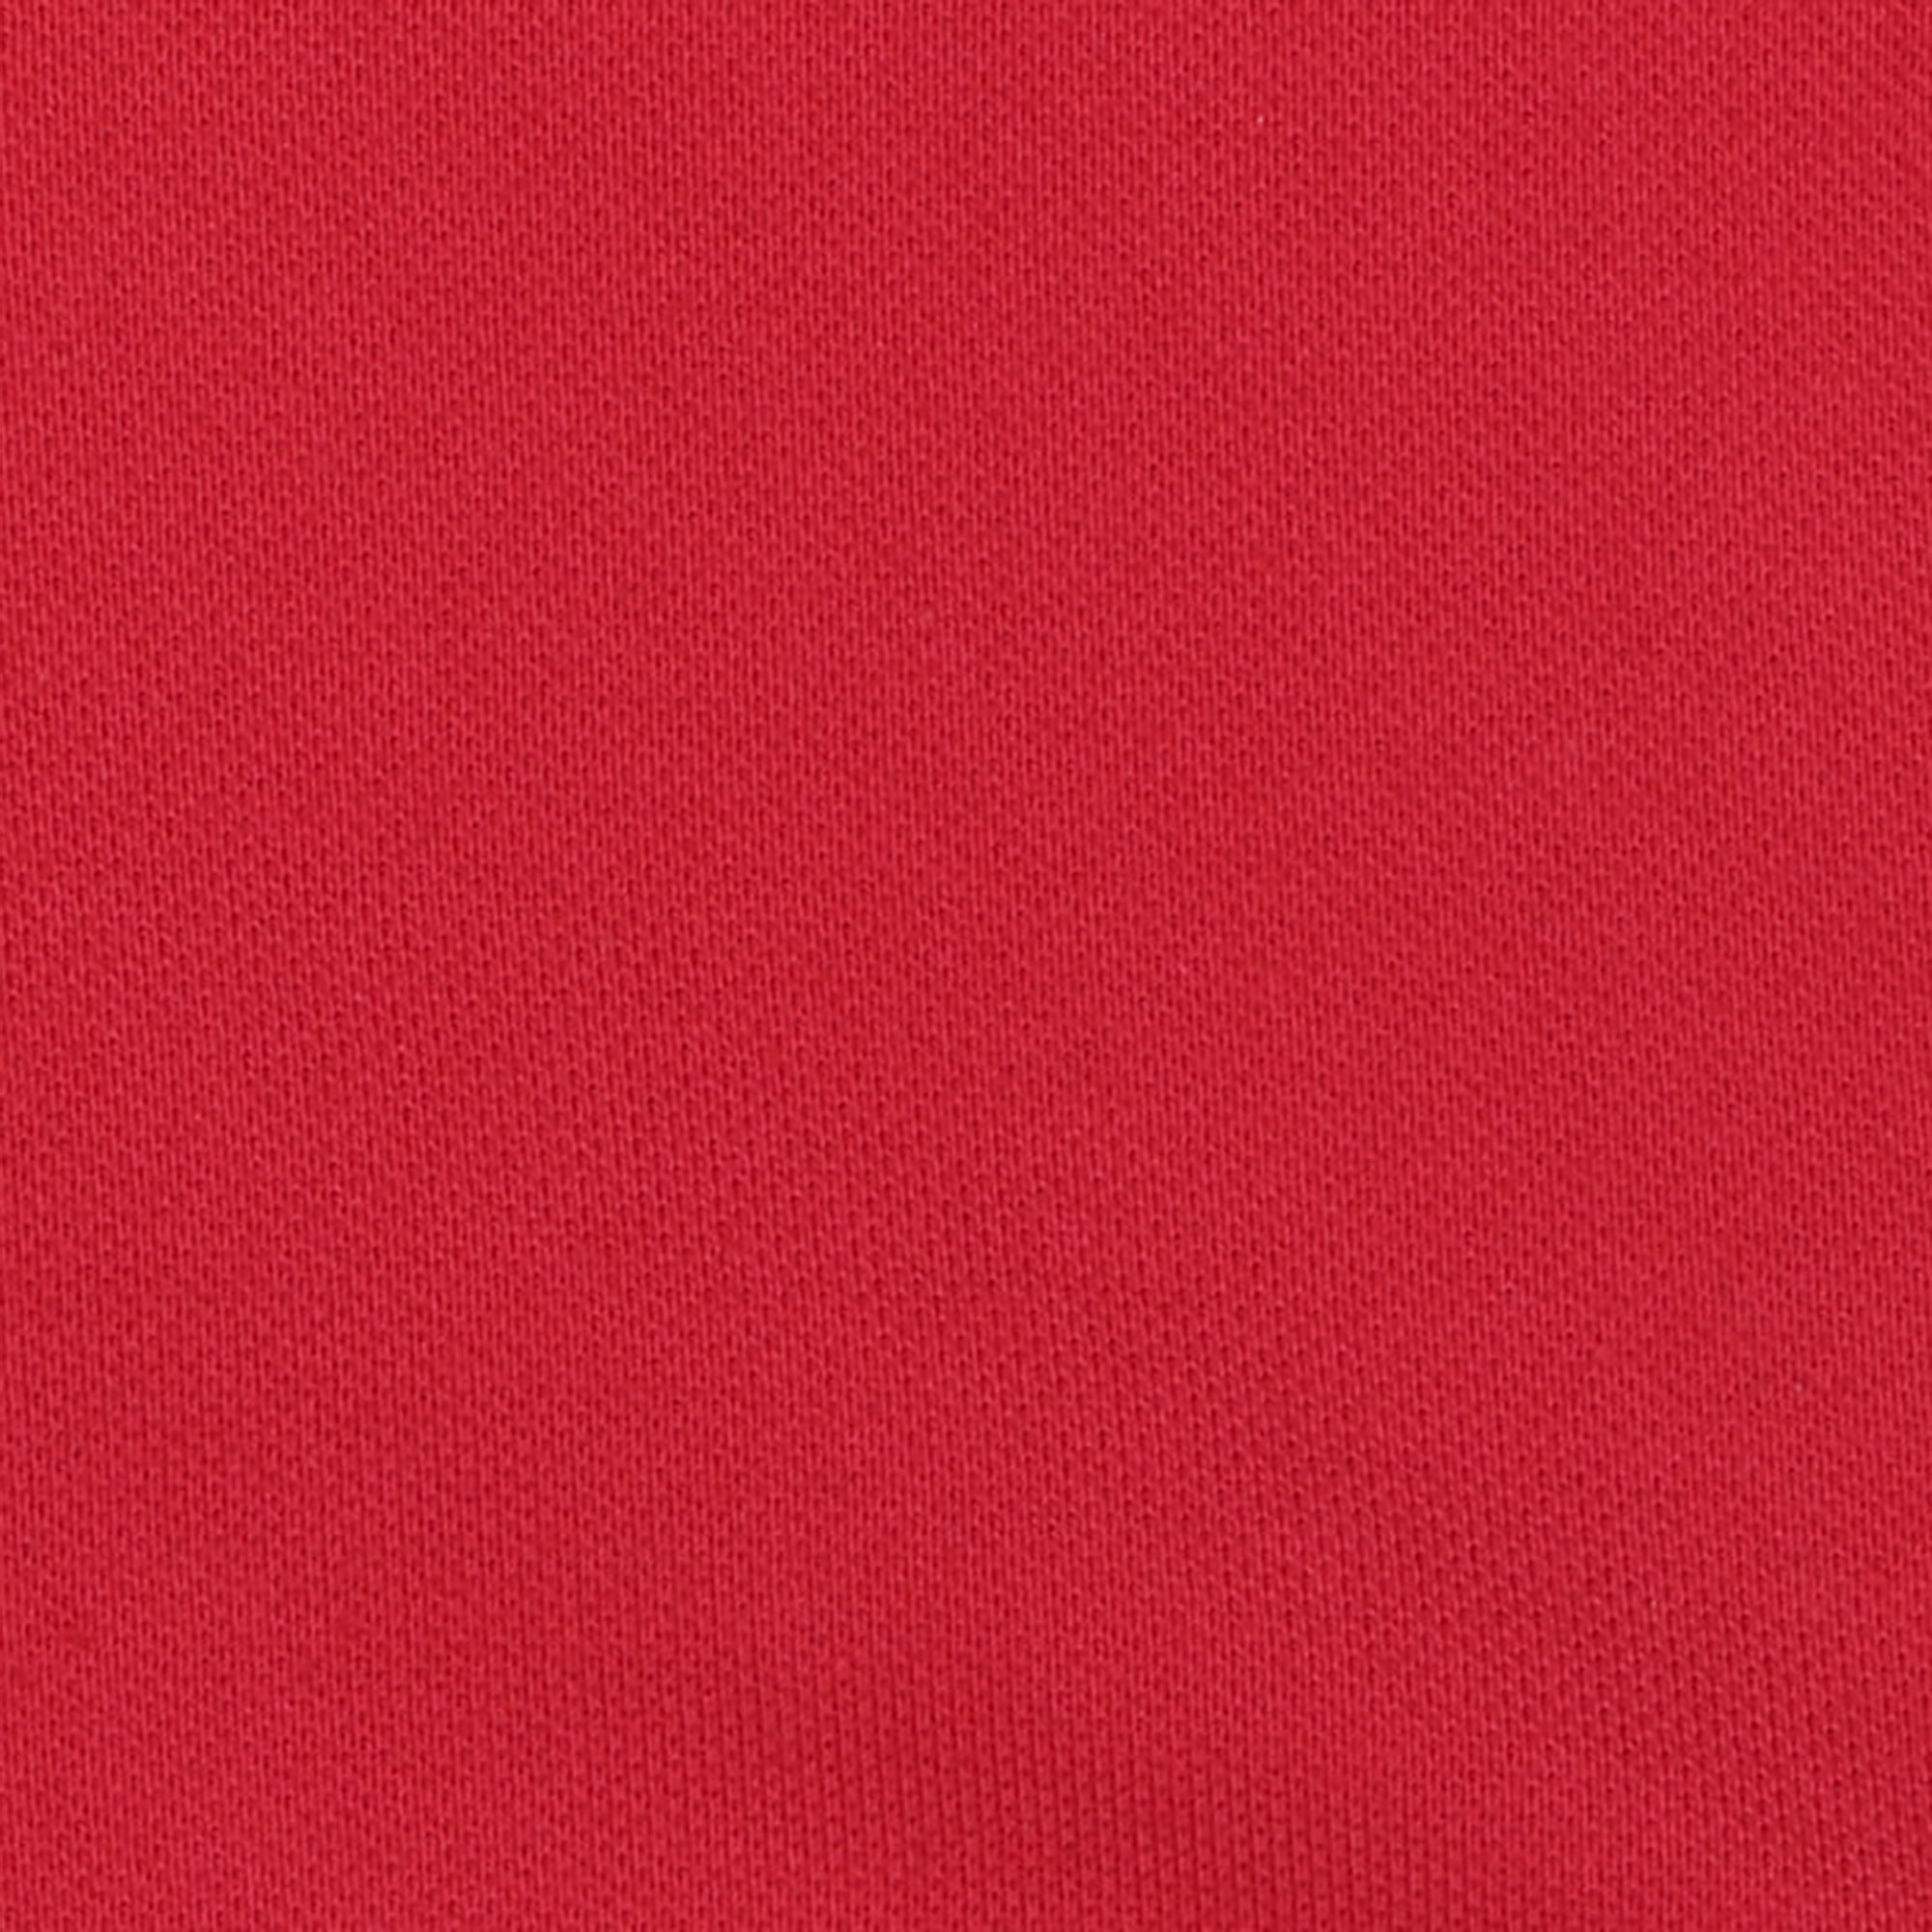 Женское поло AMADEY с коротким рукавом  L красное, цвет красный, размер L - фото 4